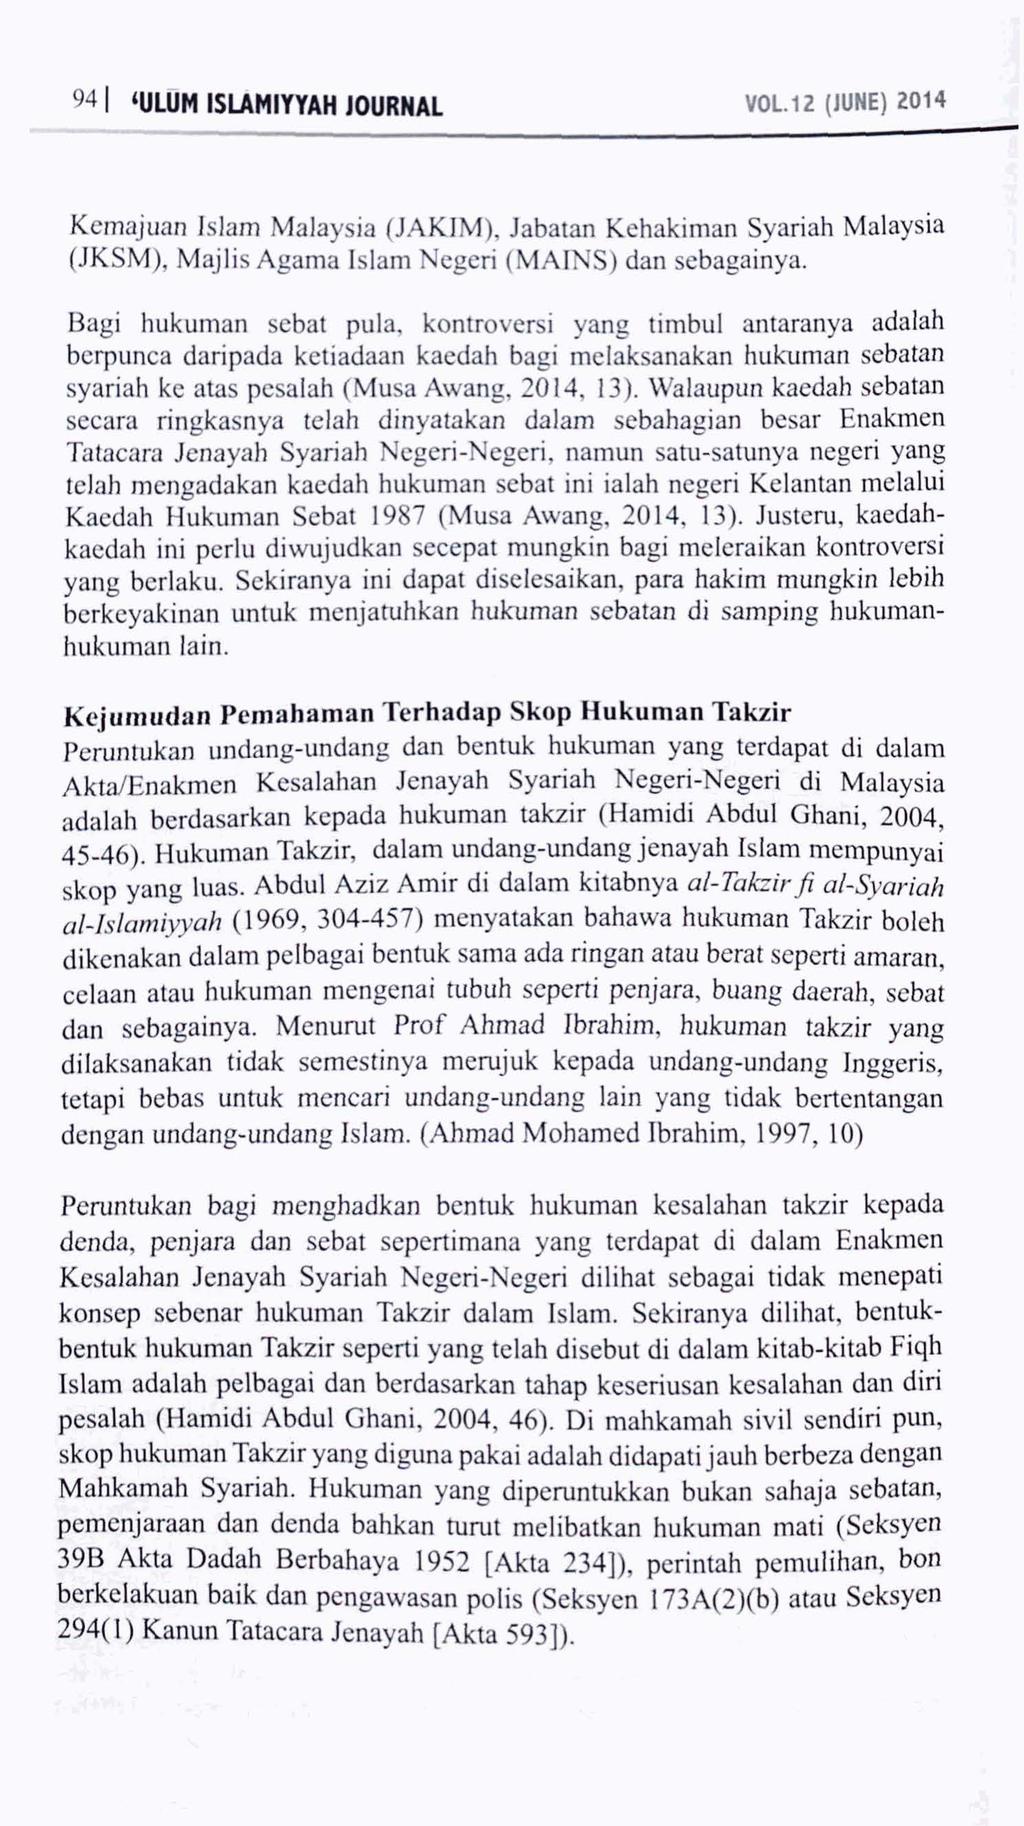 VOL.12 (JUNE) 2014 Kemajuan Islam Malaysia (JAKIM), Jabatan Kehakiman Syariah Malaysia (JKSM), Majlis Agama Islam Negeri (MAINS) dan sebagainya.